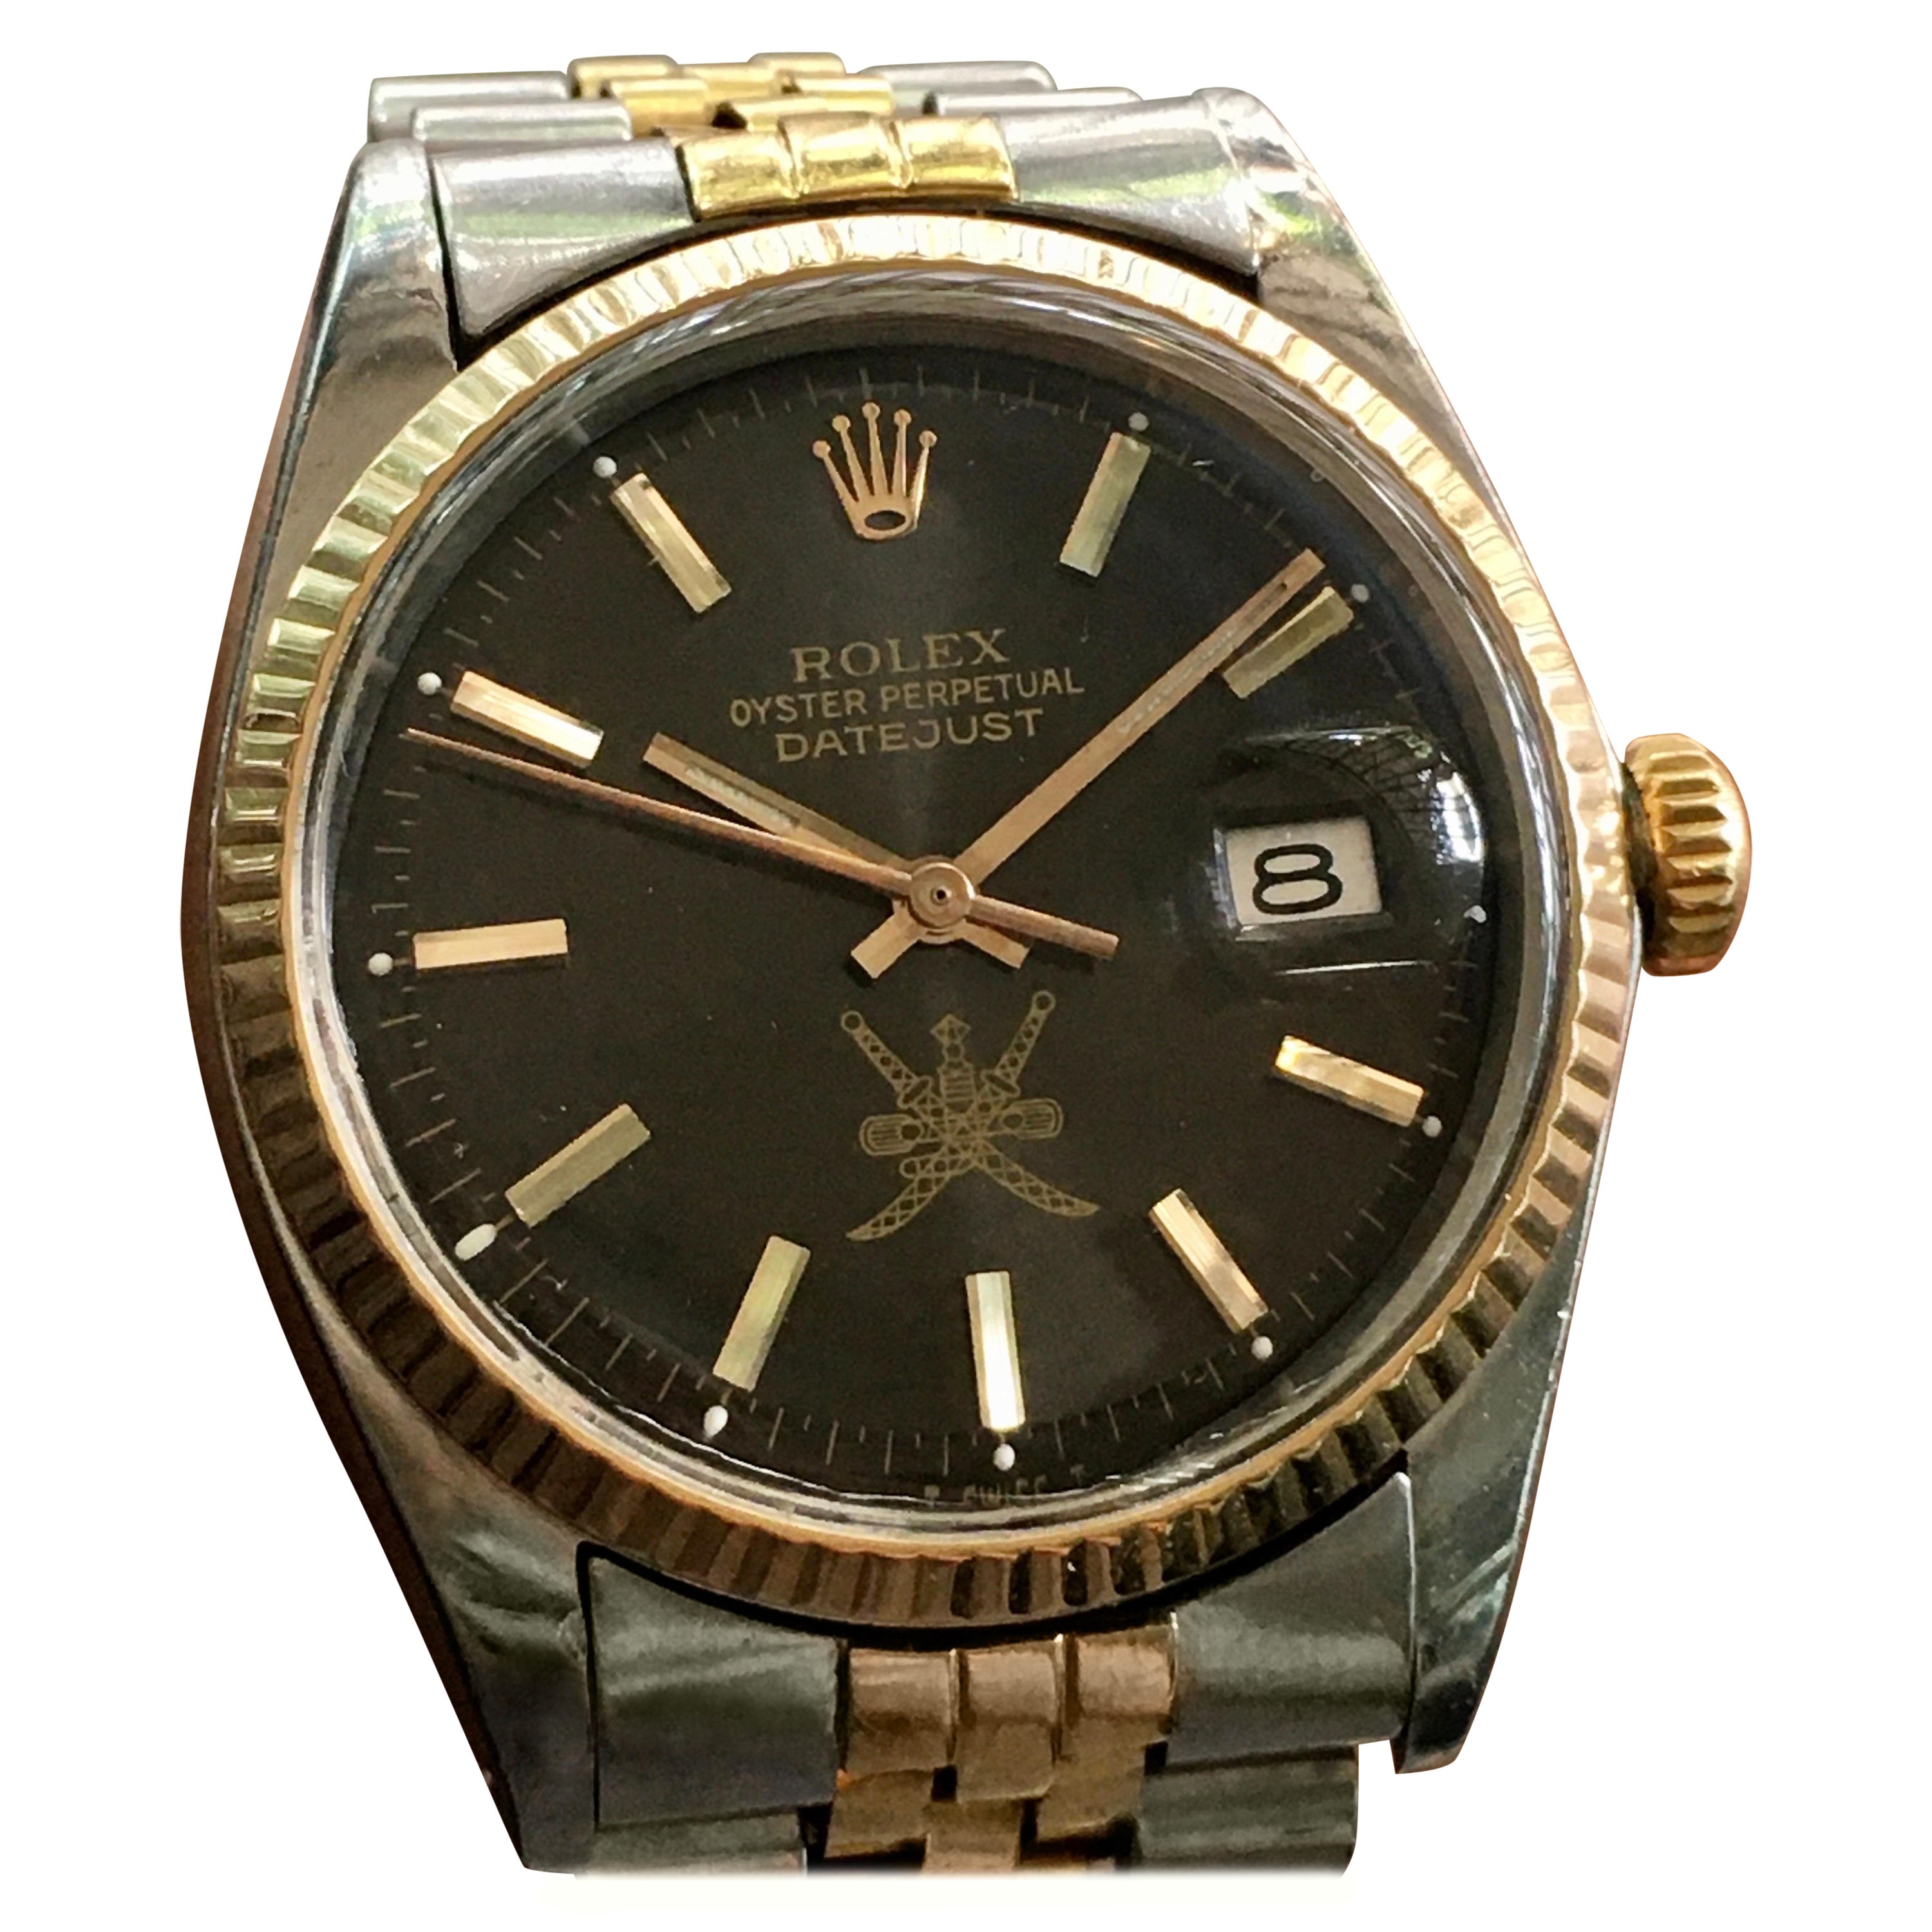 1974 Rolex Date Just Khanjar Schwarz خنجر Zifferblatt 18K Zwei-Ton-Uhr Ref 1603 für Herren